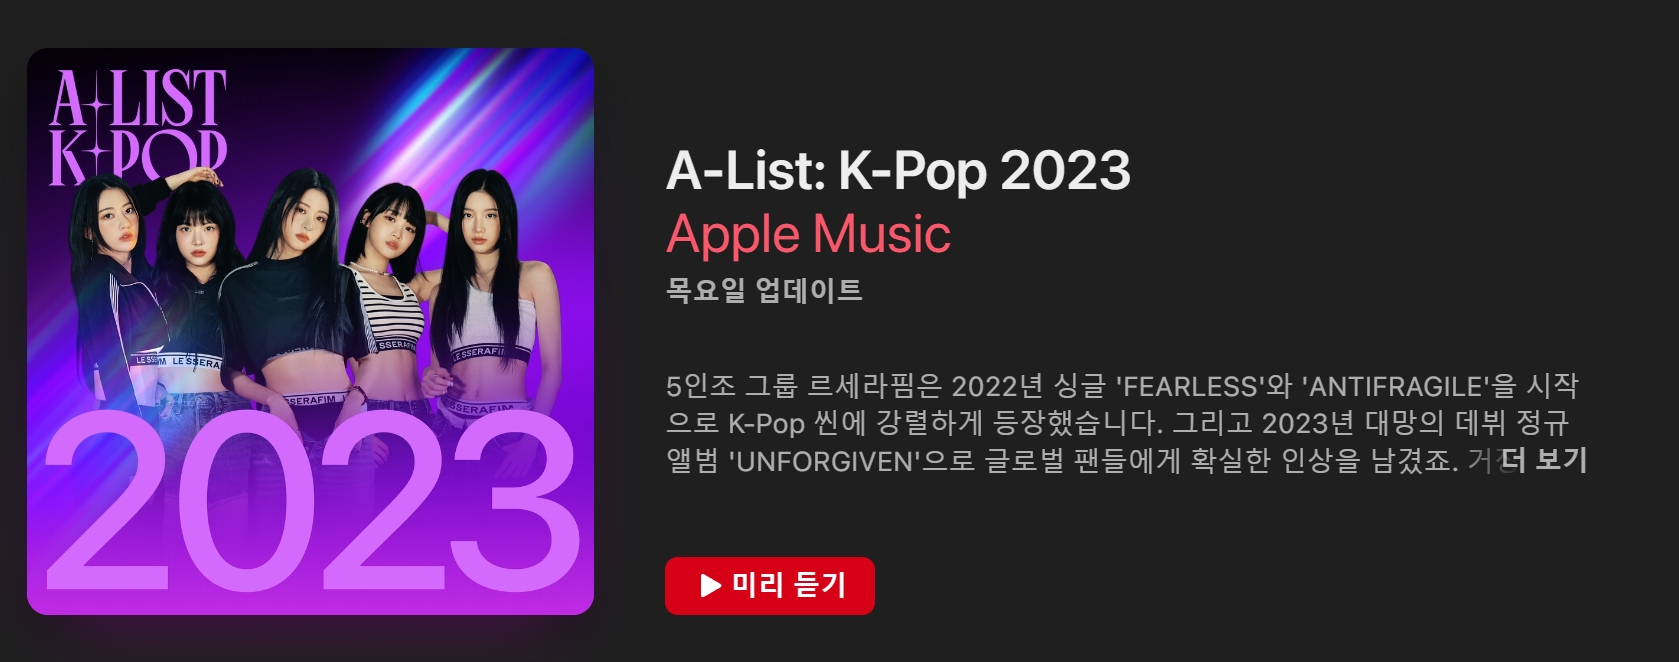 애플뮤직(apple music) &#39;A-List K-POP : 2023&#39; 커버